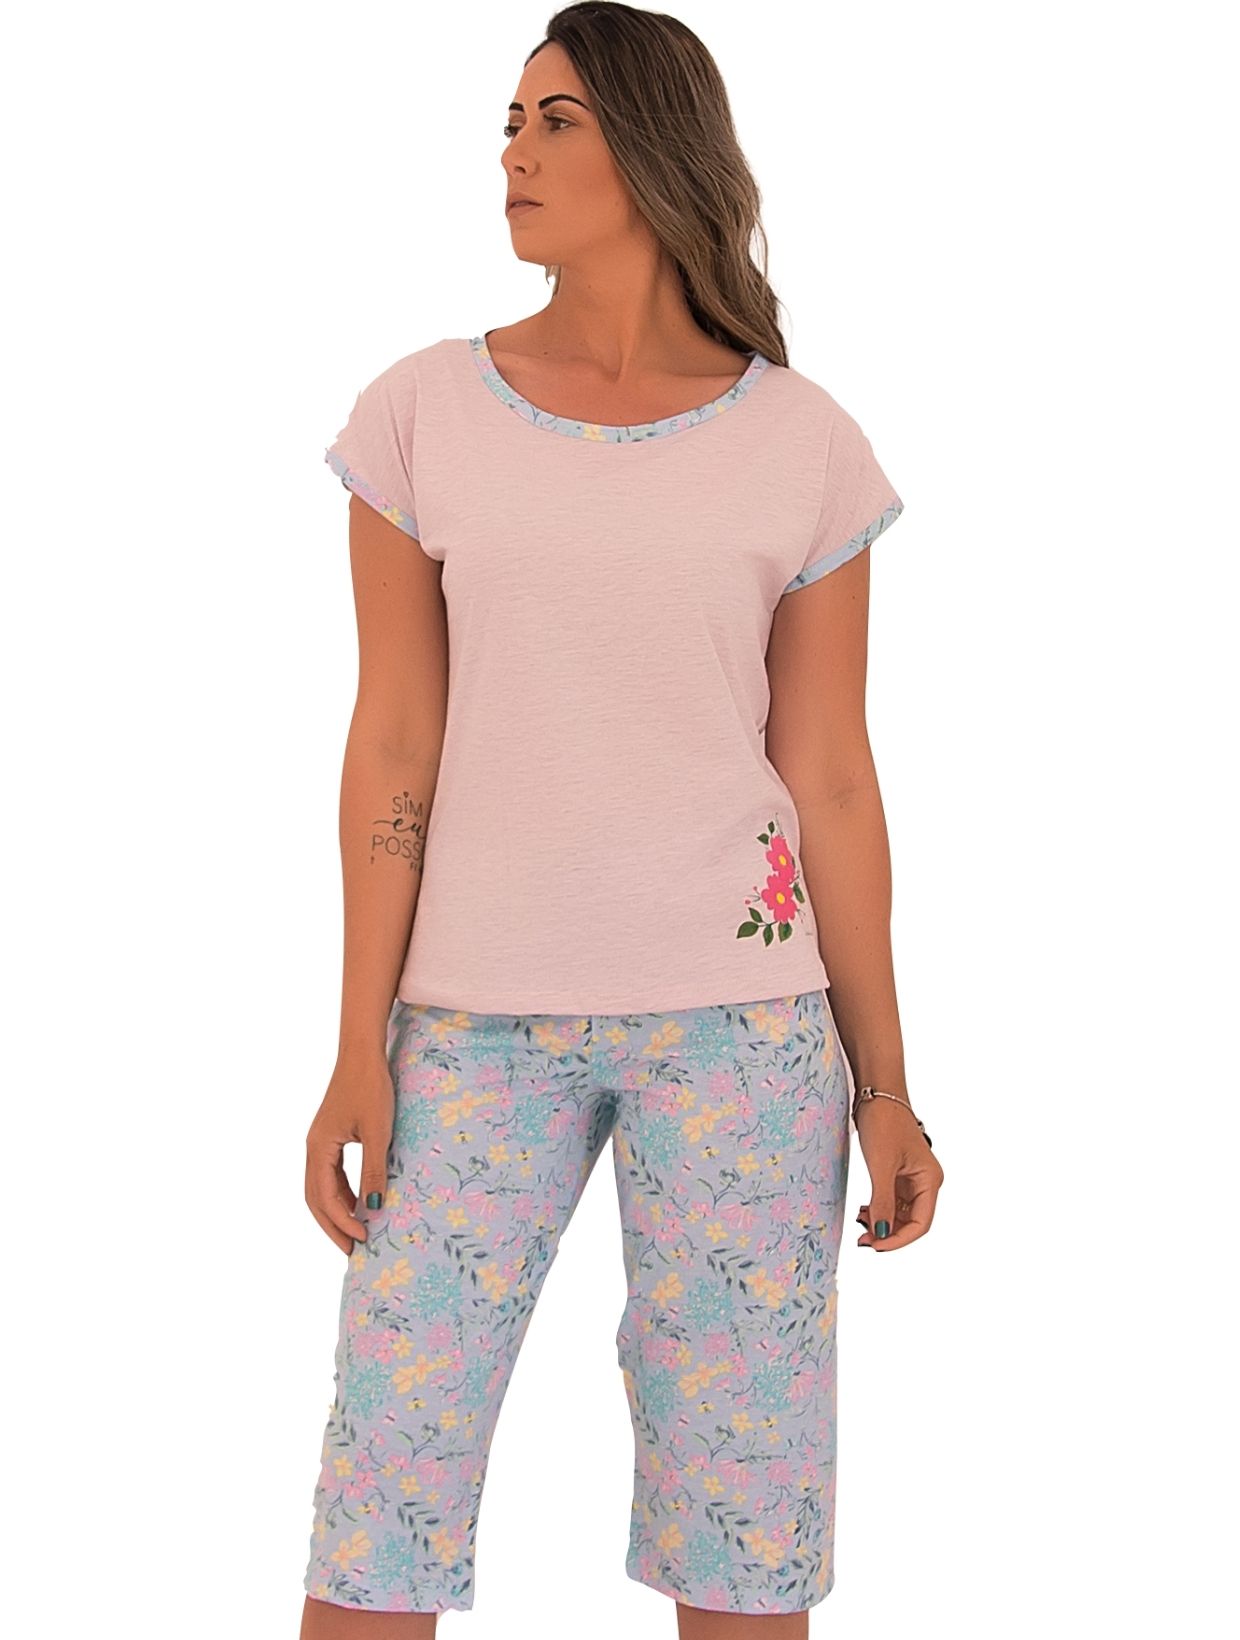 Pijama feminino com pescador florido de algodão - Leleka Pijamas